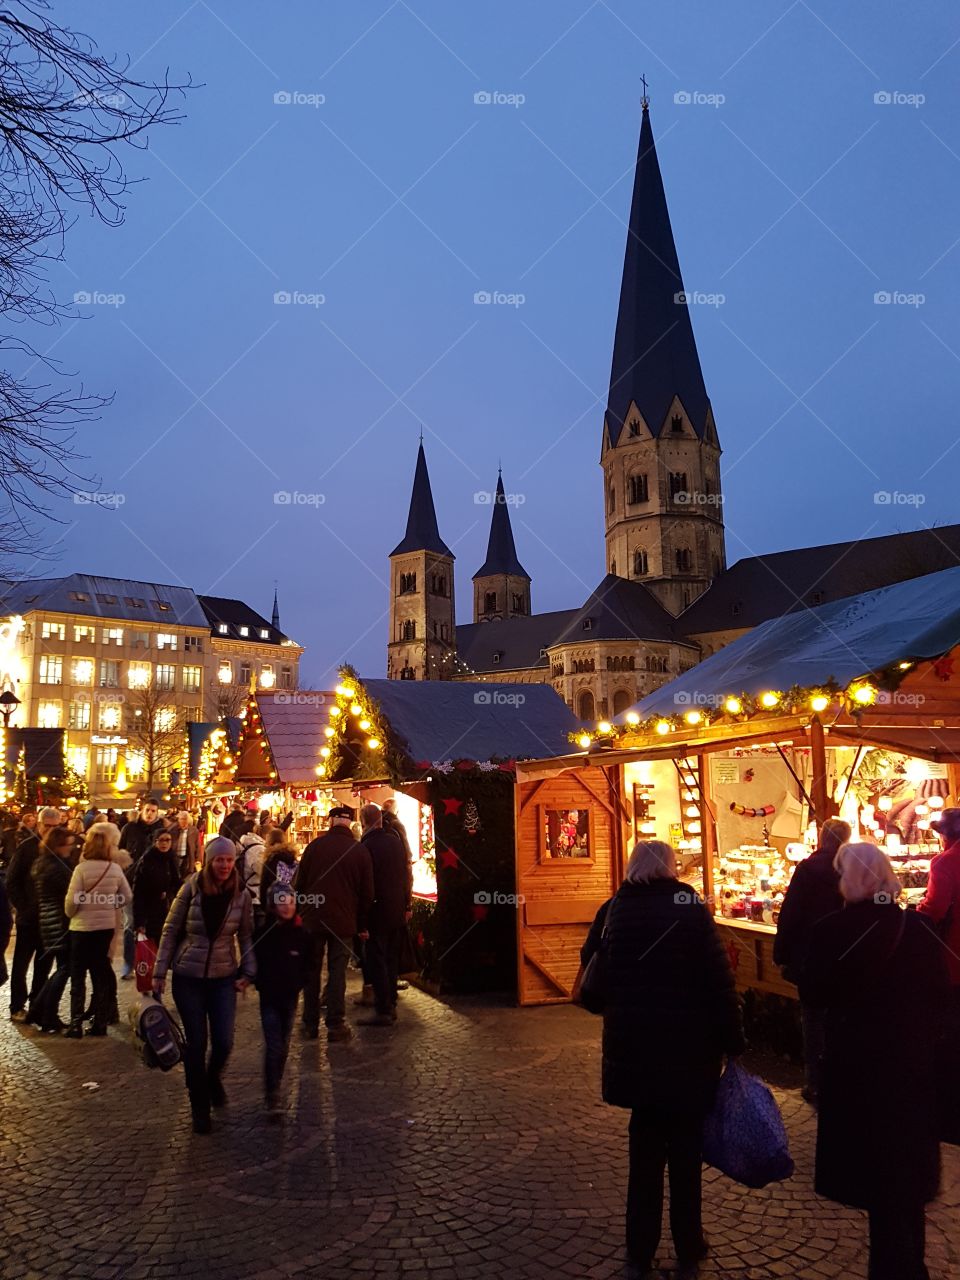 Weihnachtsmarkt in Bonn